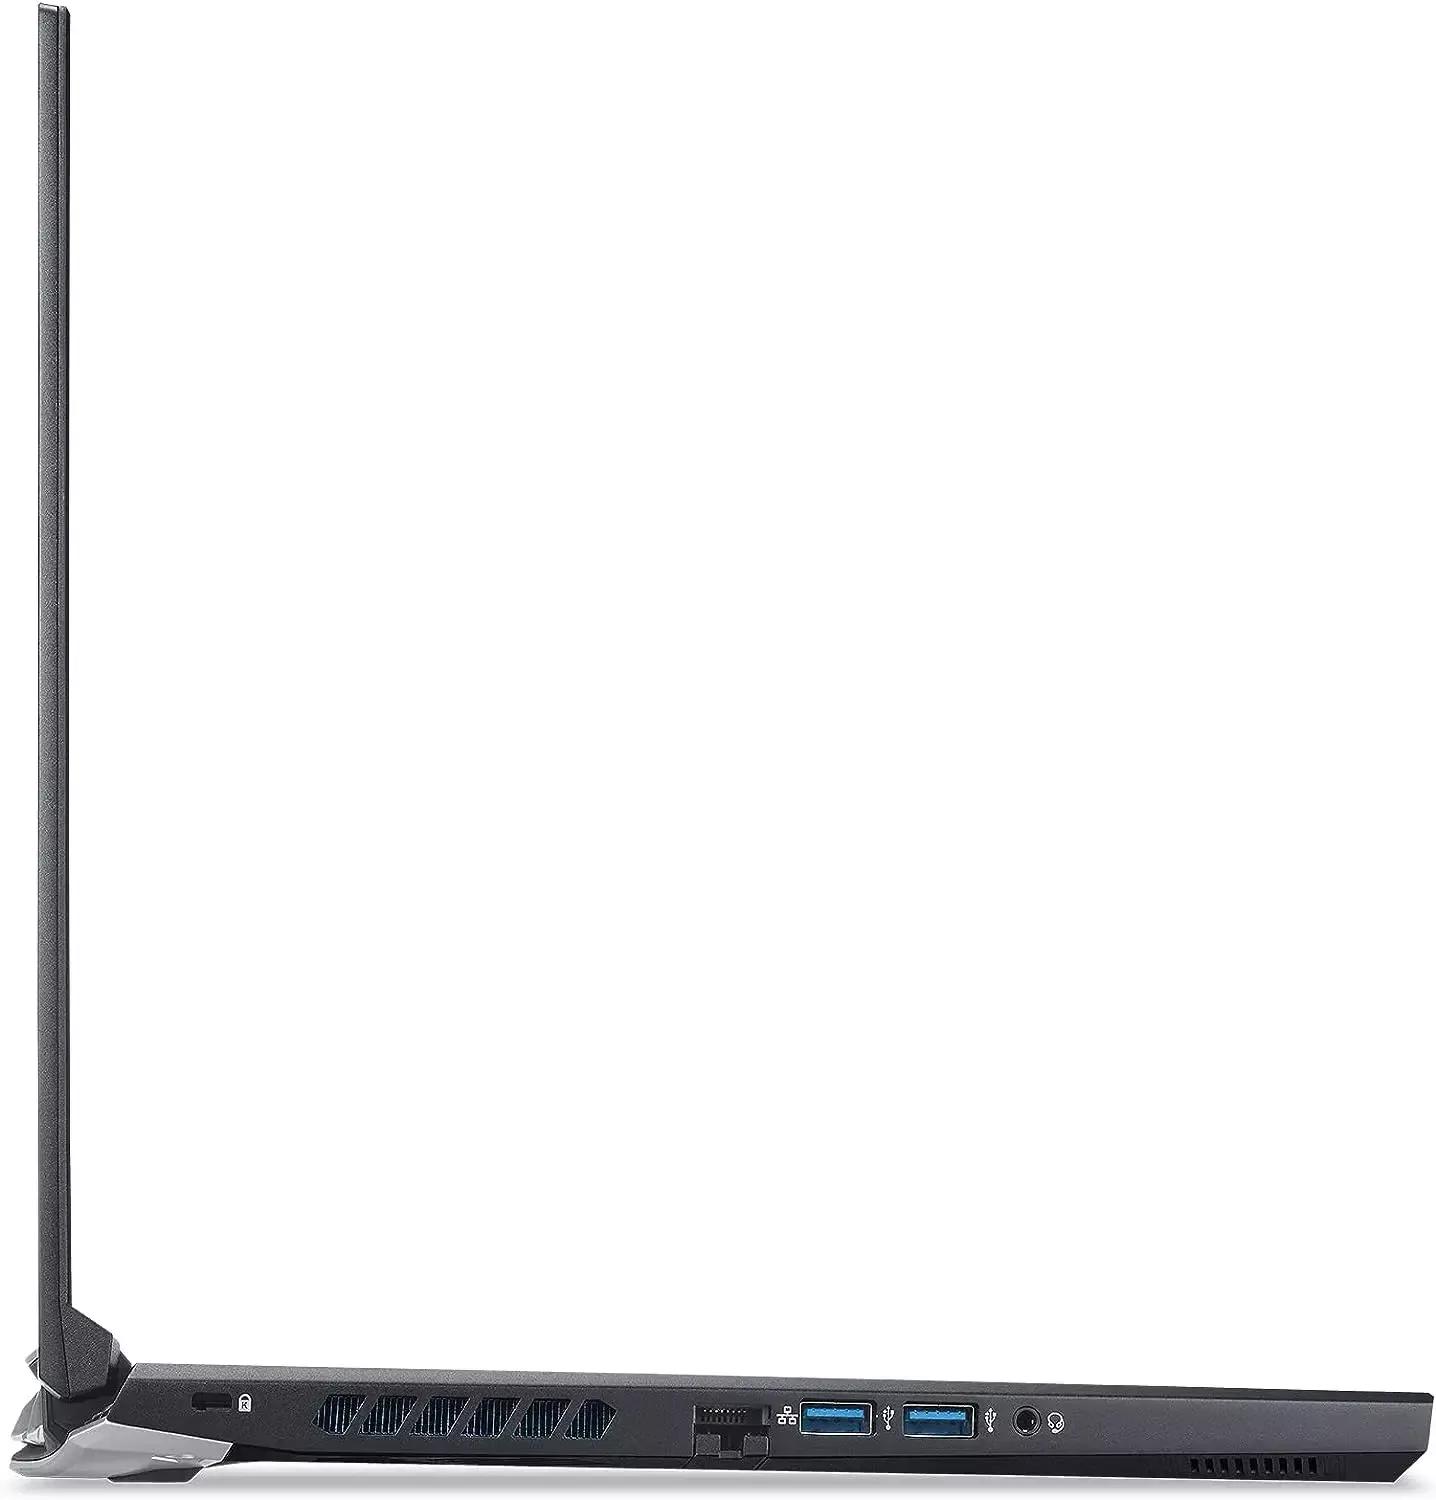 Acer Predator Helios 300 2020 i7 10th Gen | 16GB RAM | 1TB SSD | RTX 3060 | 15.6" FHD 144Hz